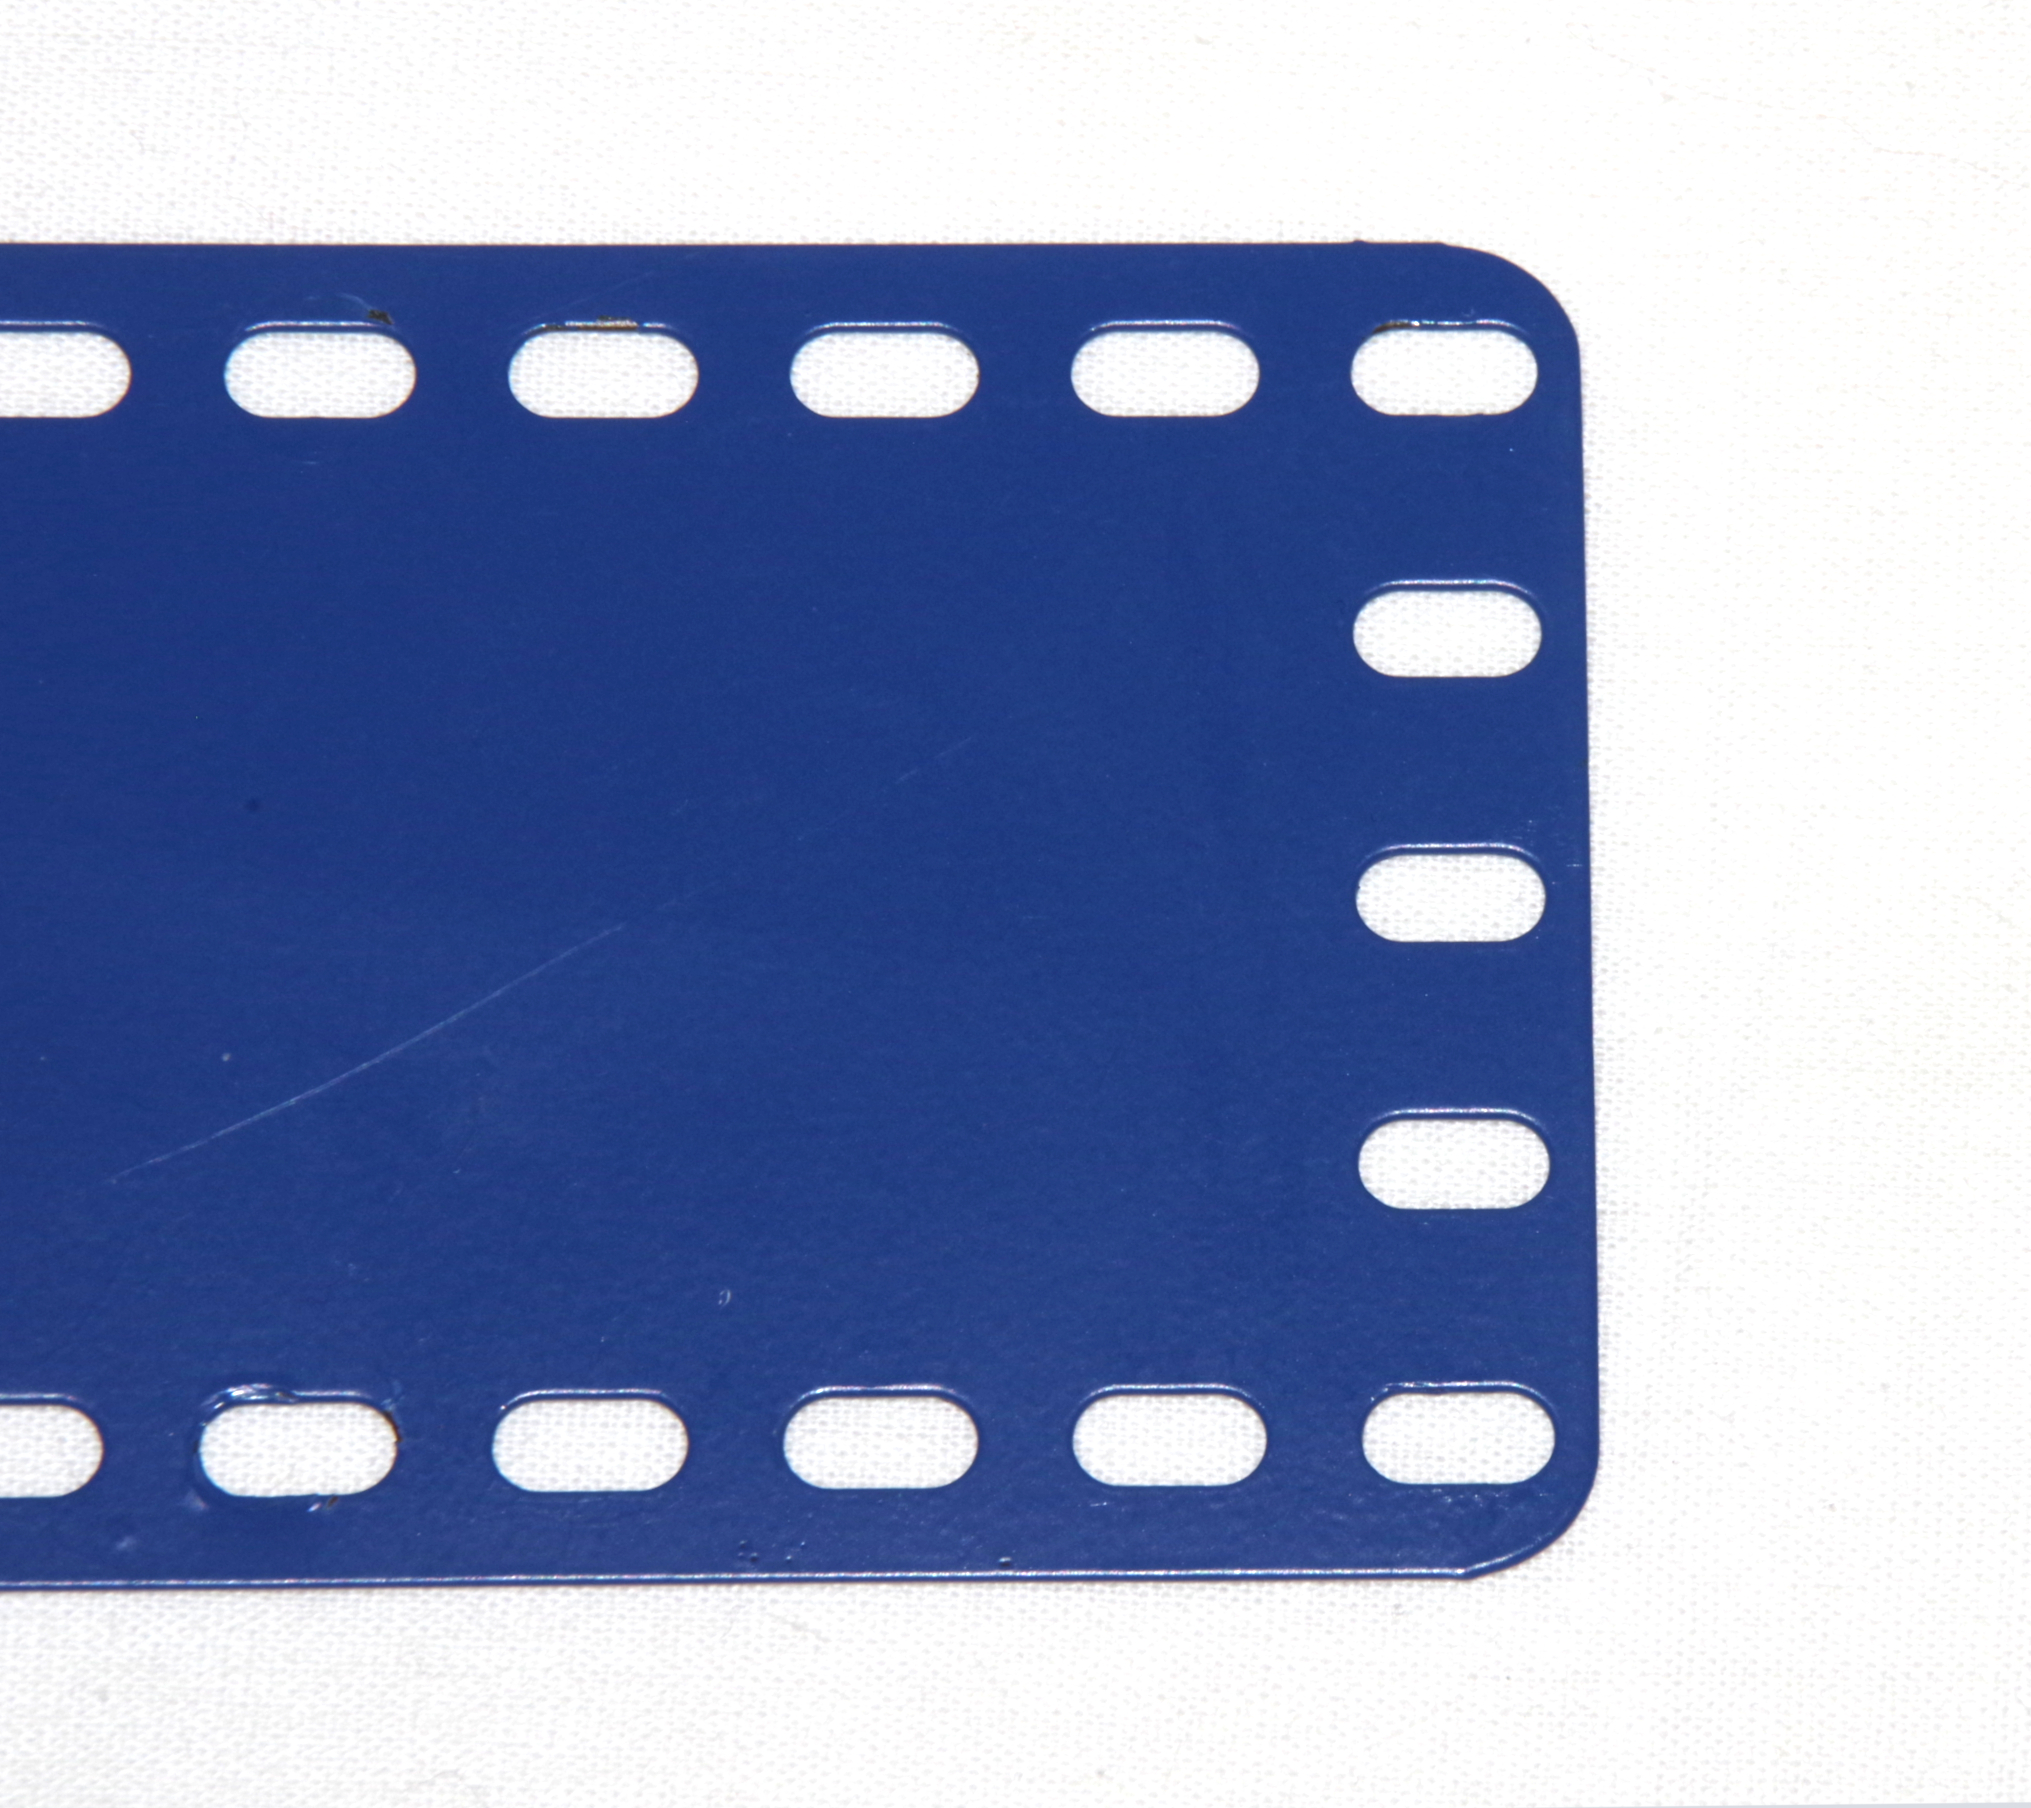 4505-19 Flat Plate 19x5 Metallus Blue Used